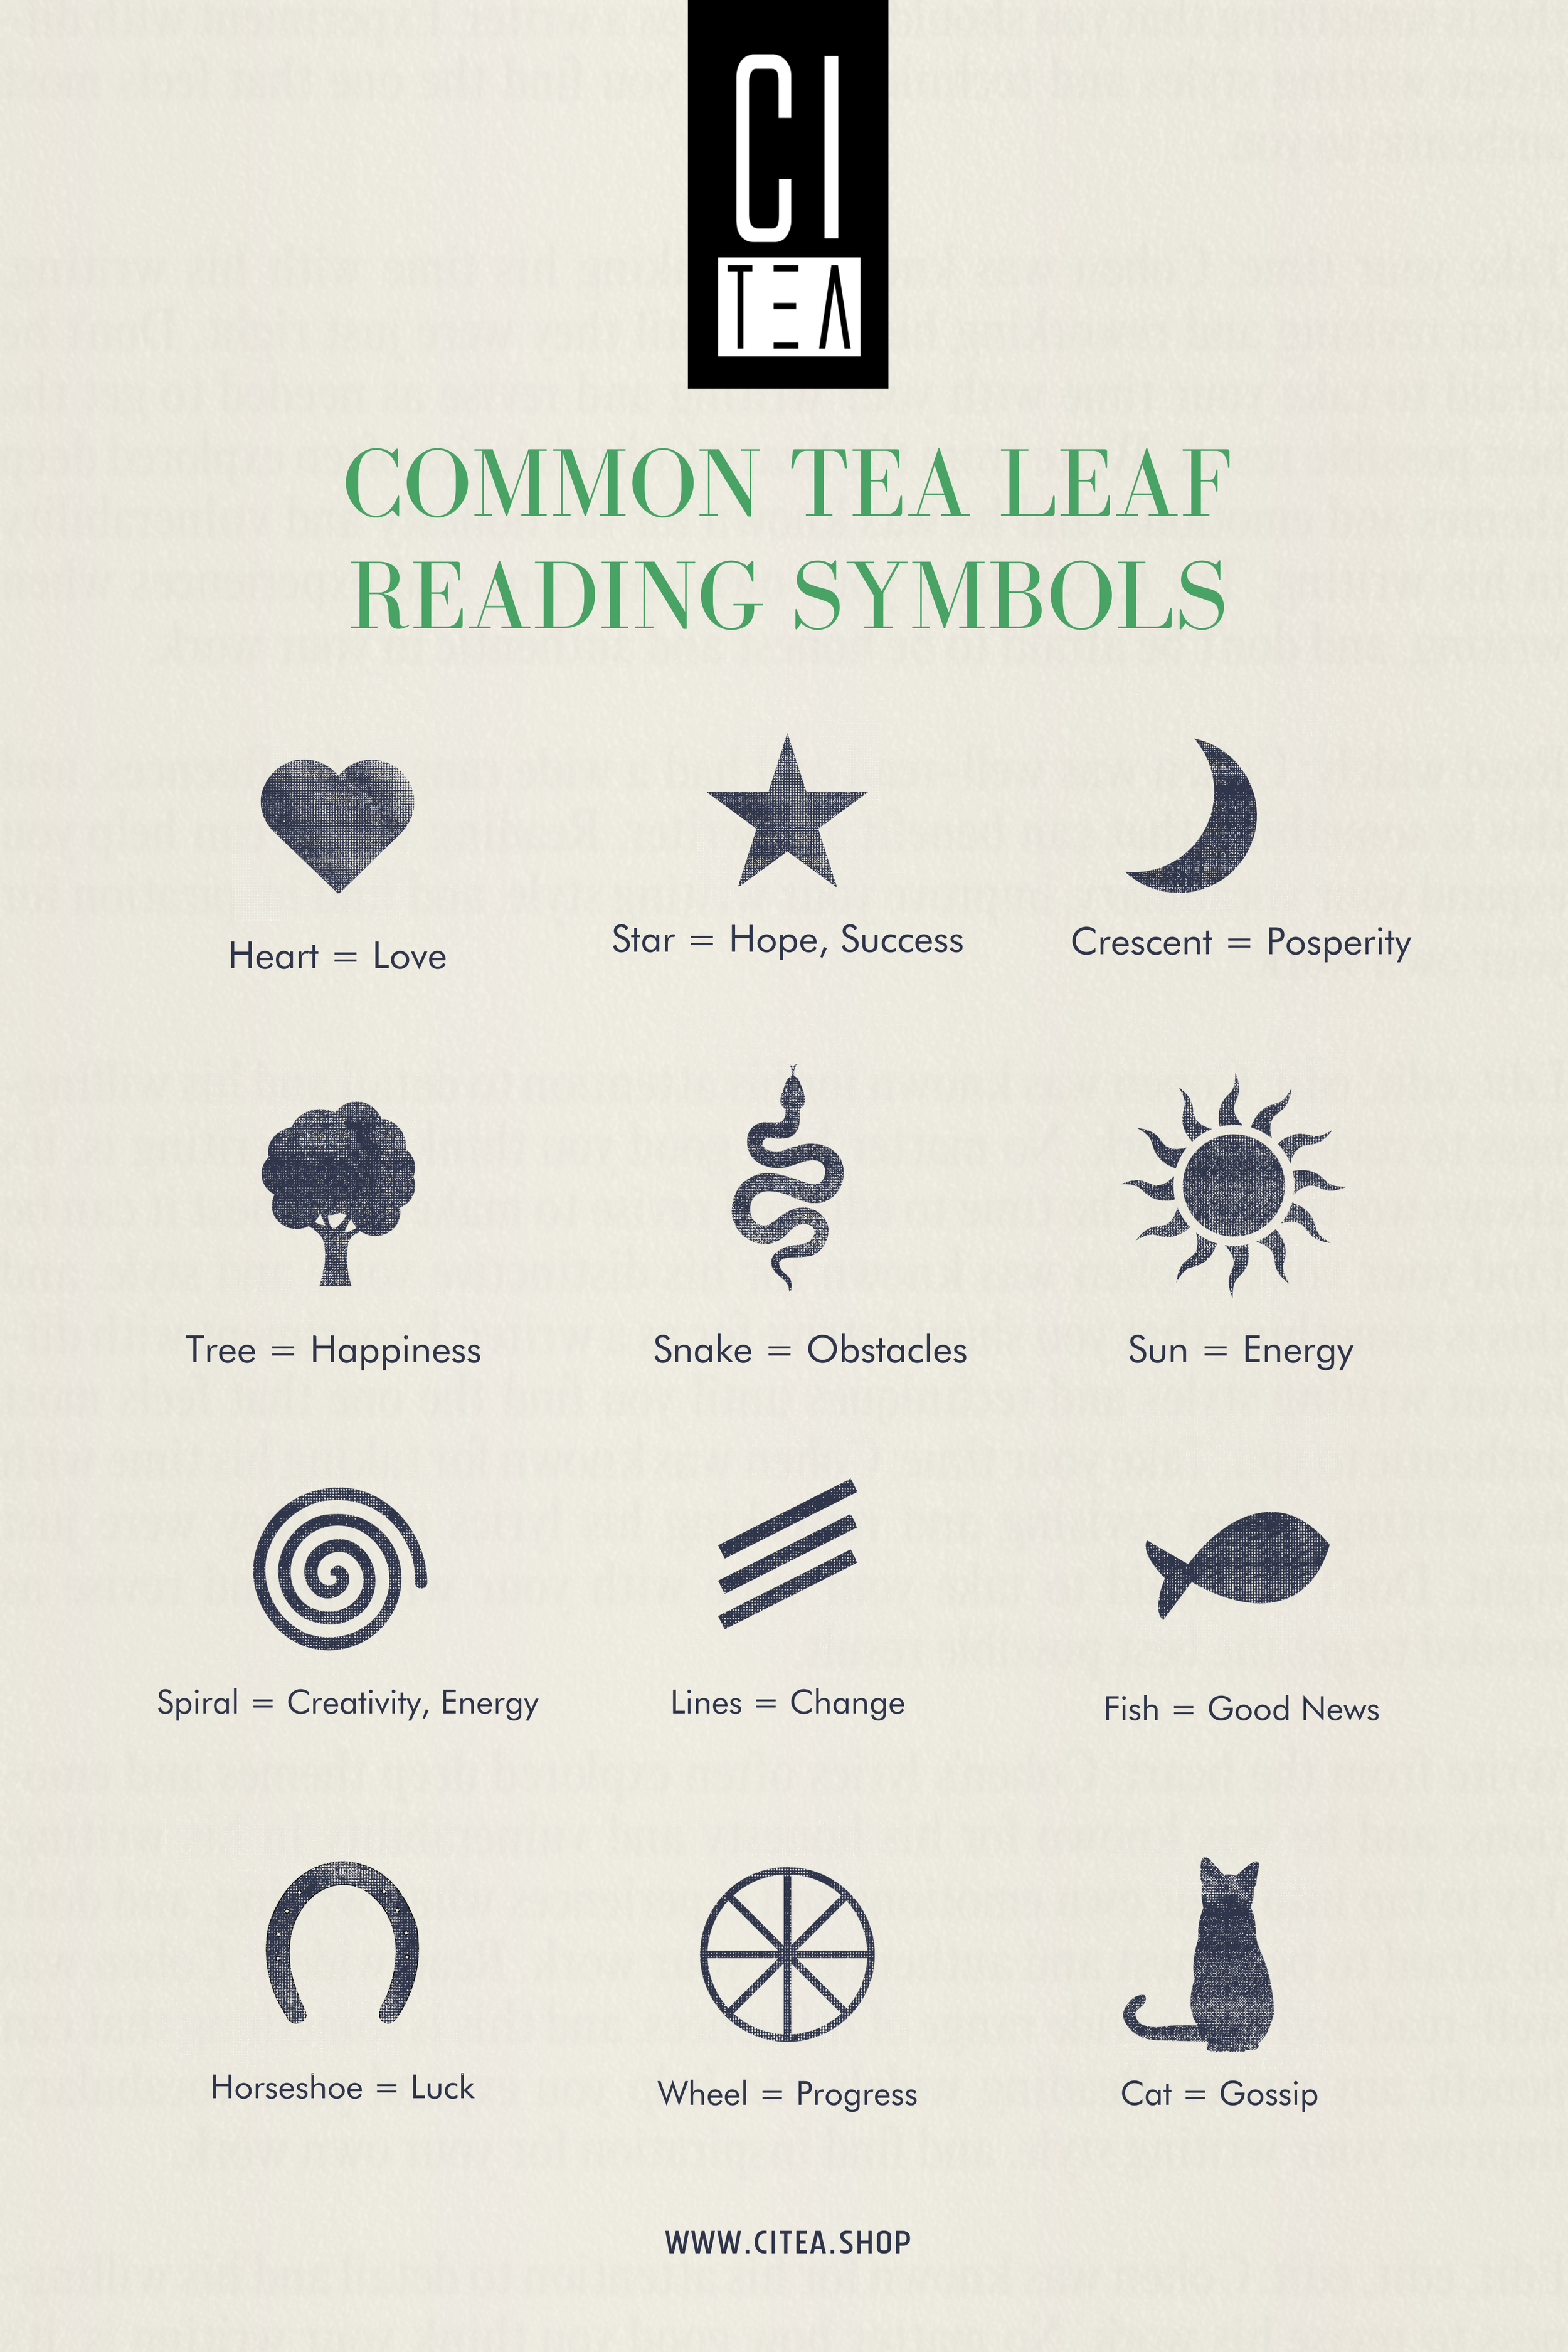 symboles communs de lecture des feuilles de thé